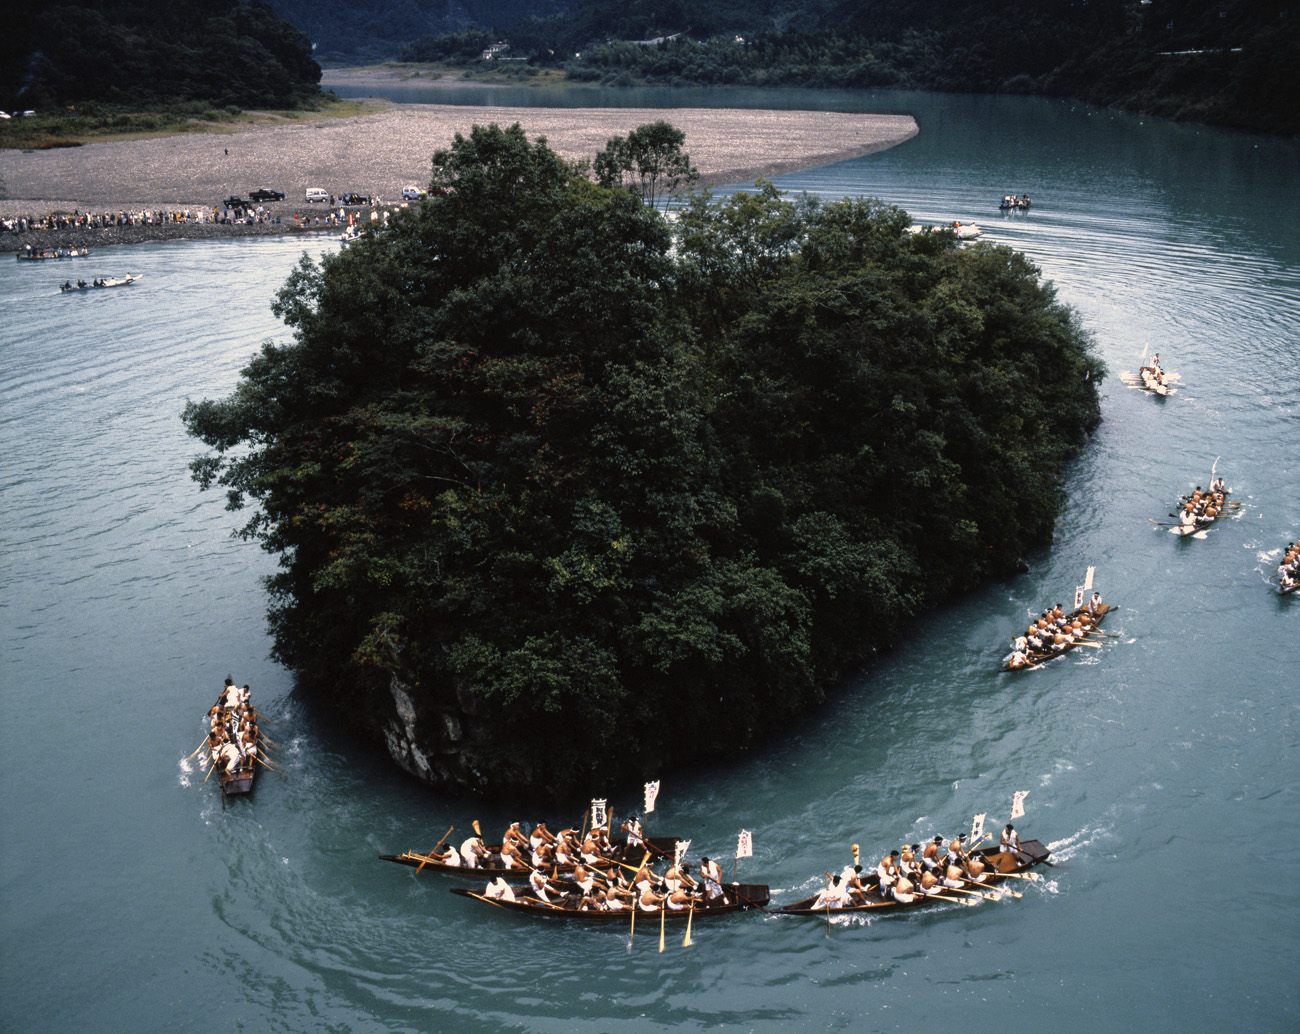 「御船祭」の早船競漕。熊野川で9隻の早船が御船島の周囲を回る。
©和歌山県観光連盟